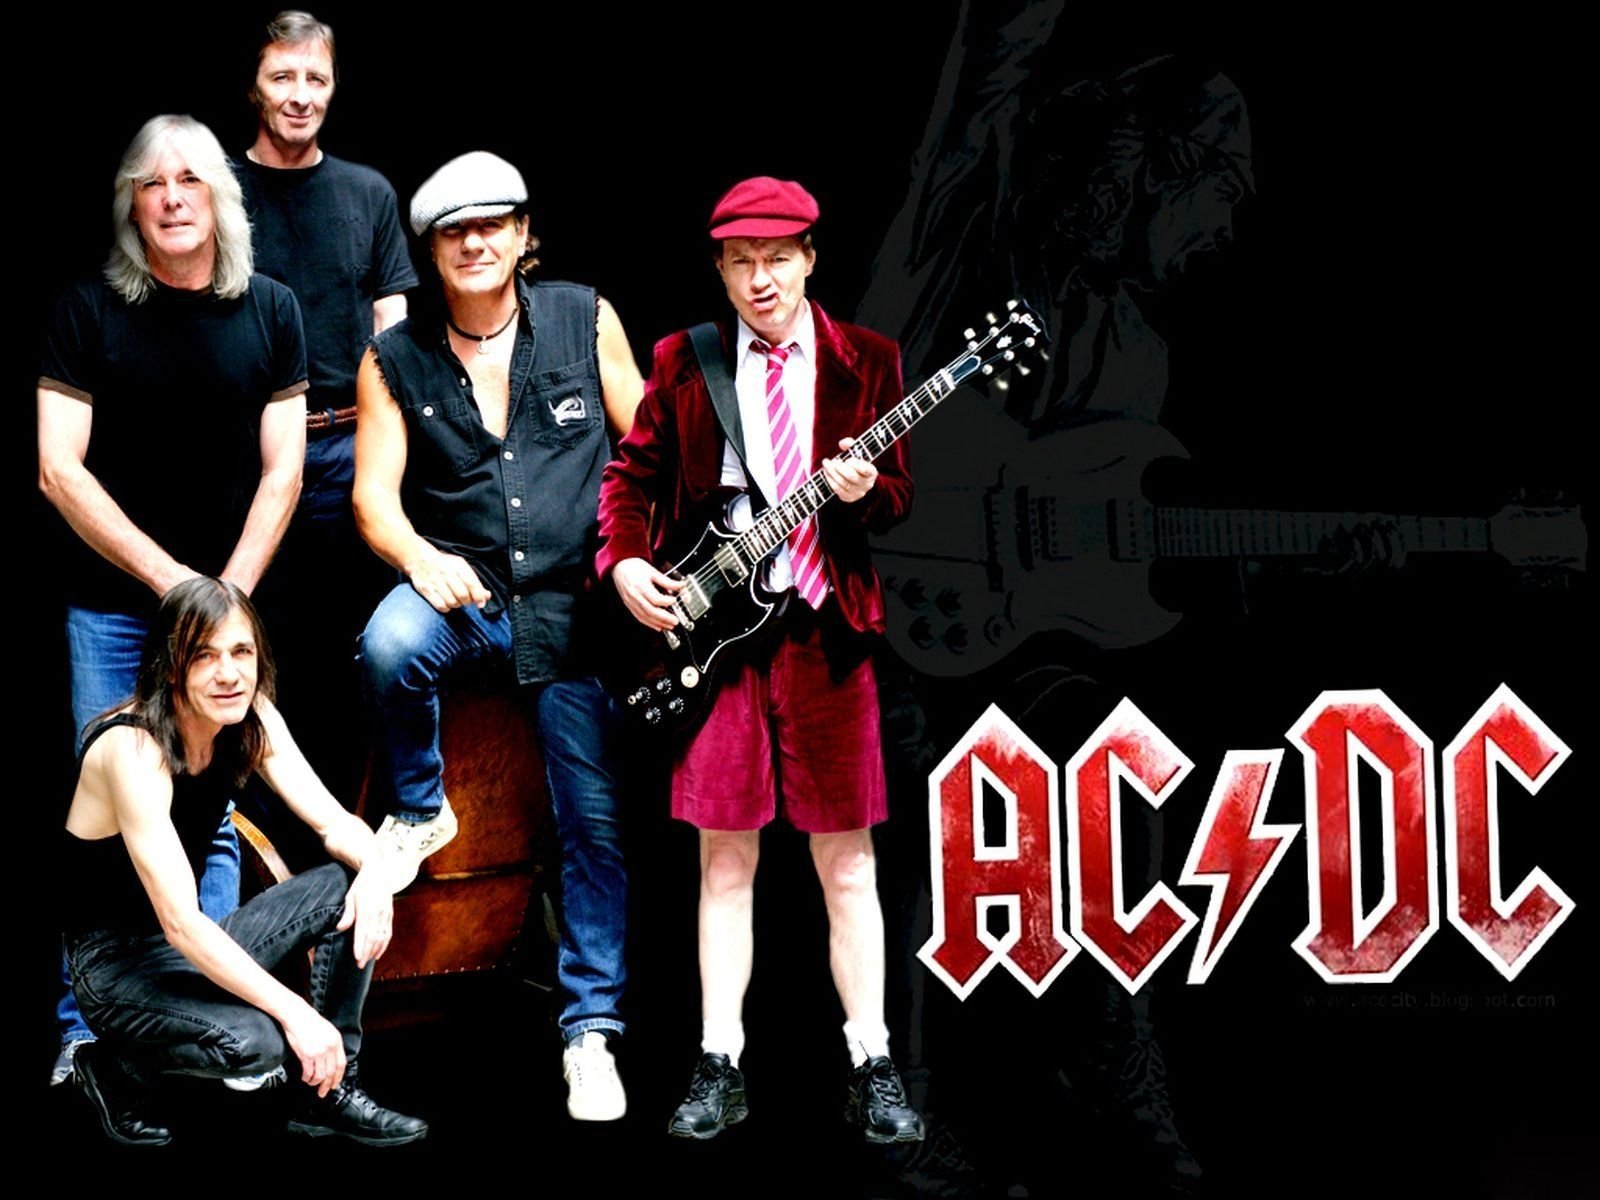 AC/DC: Il come hanno fatto la storia dell’hard rock